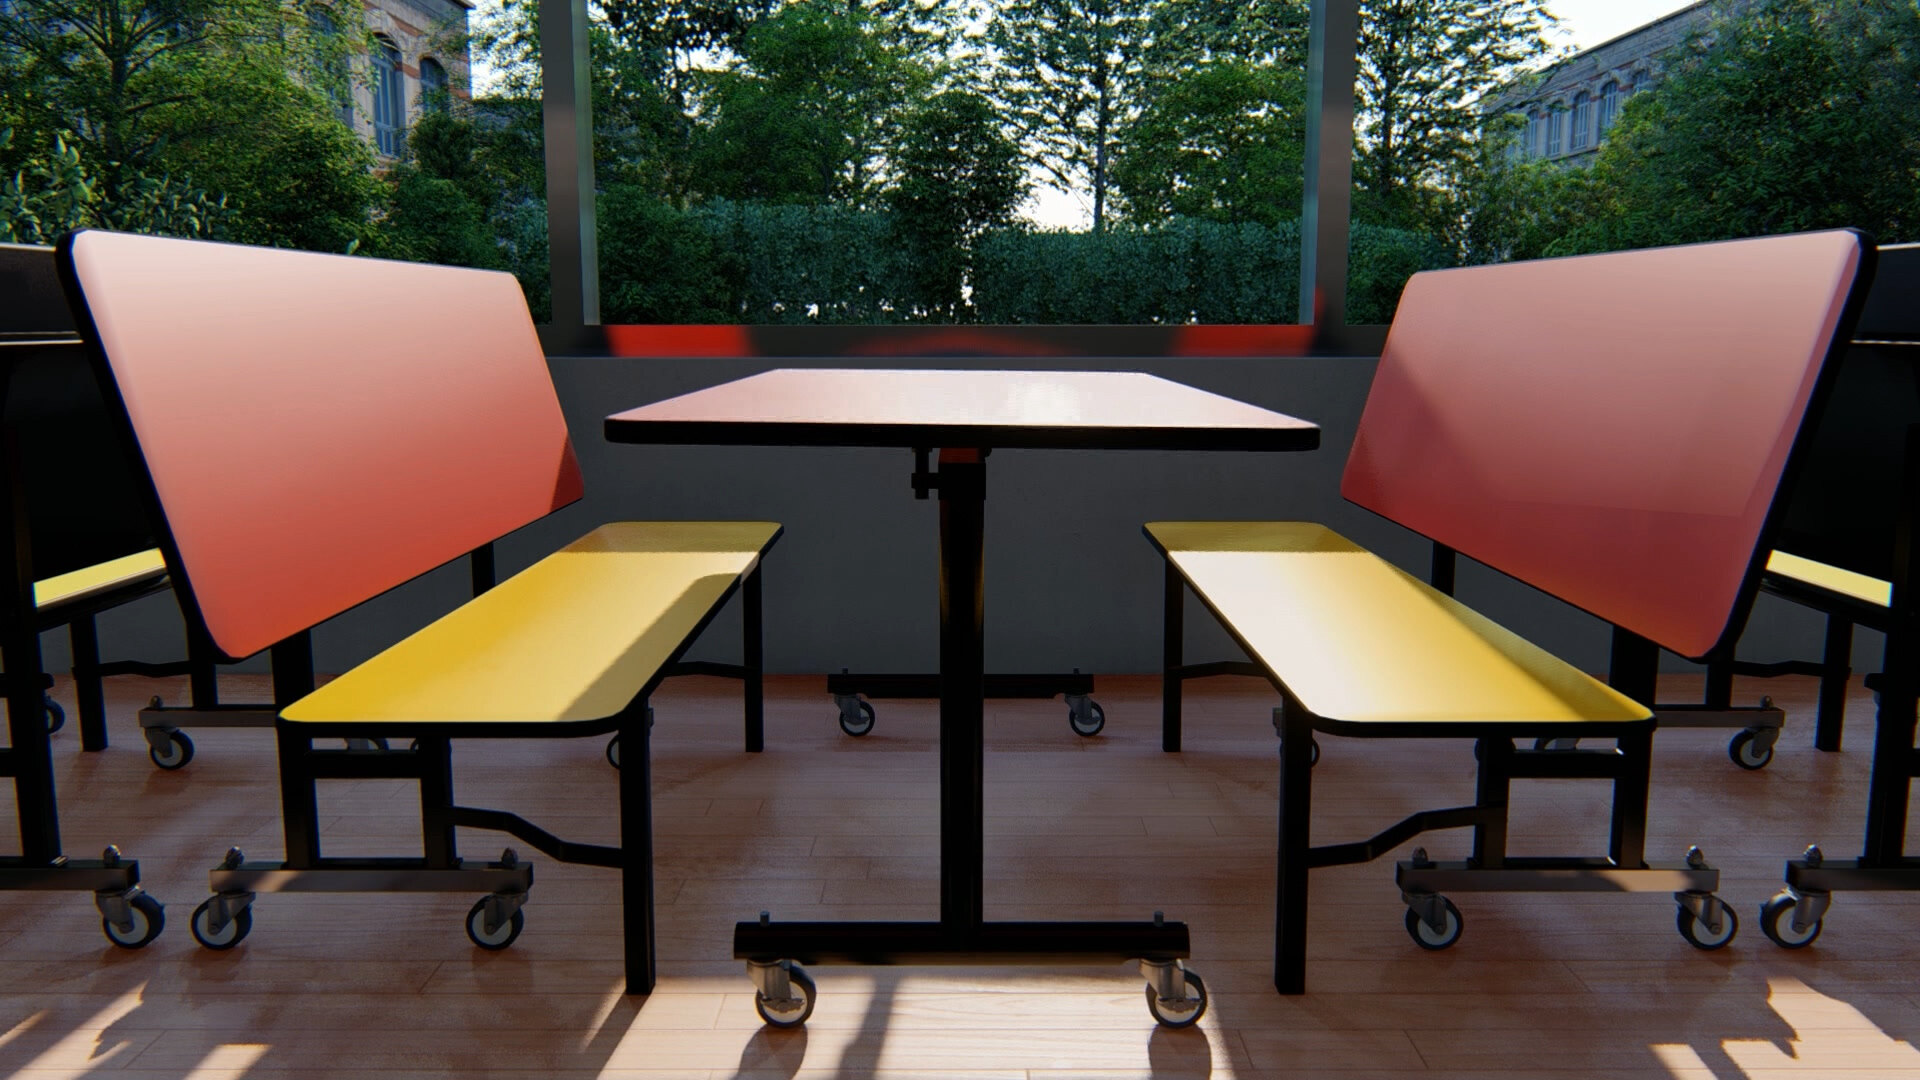 Restaurant Booth Design Plans & Sizes - WebstaurantStore